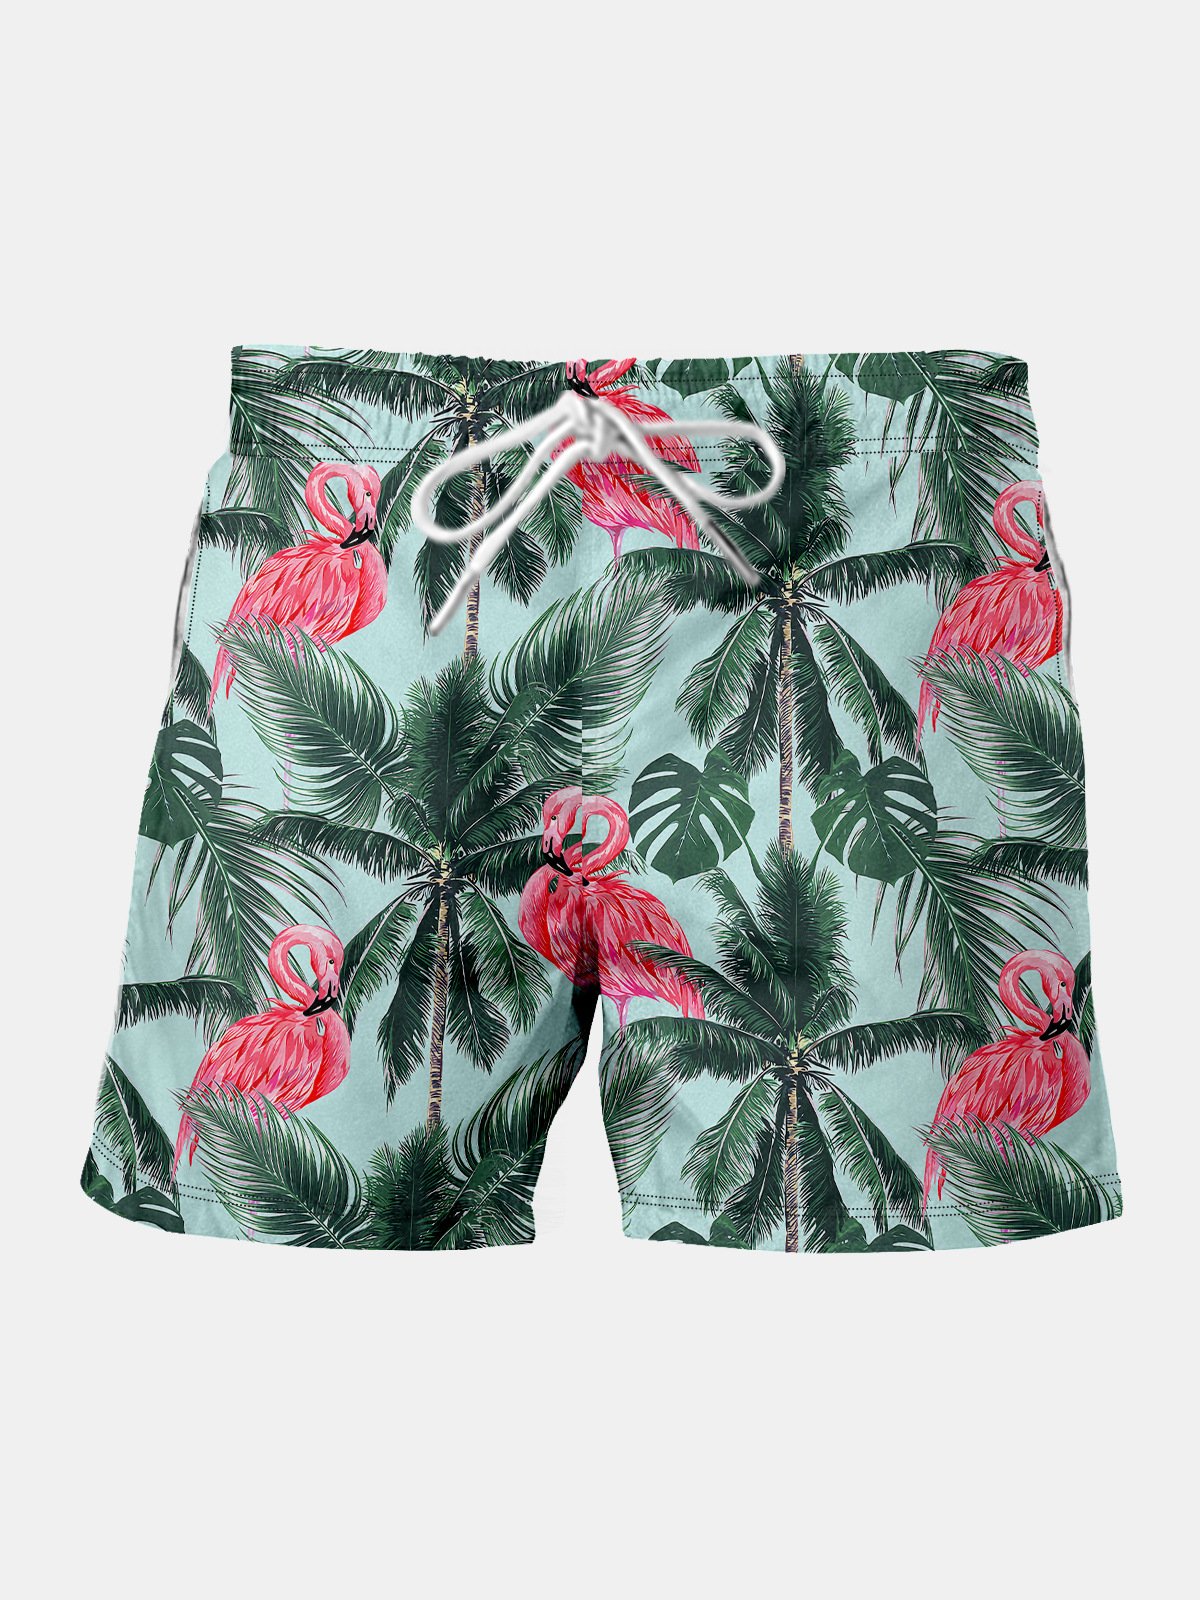 Coconut Tree Flamingo Drawstring Beach Shorts